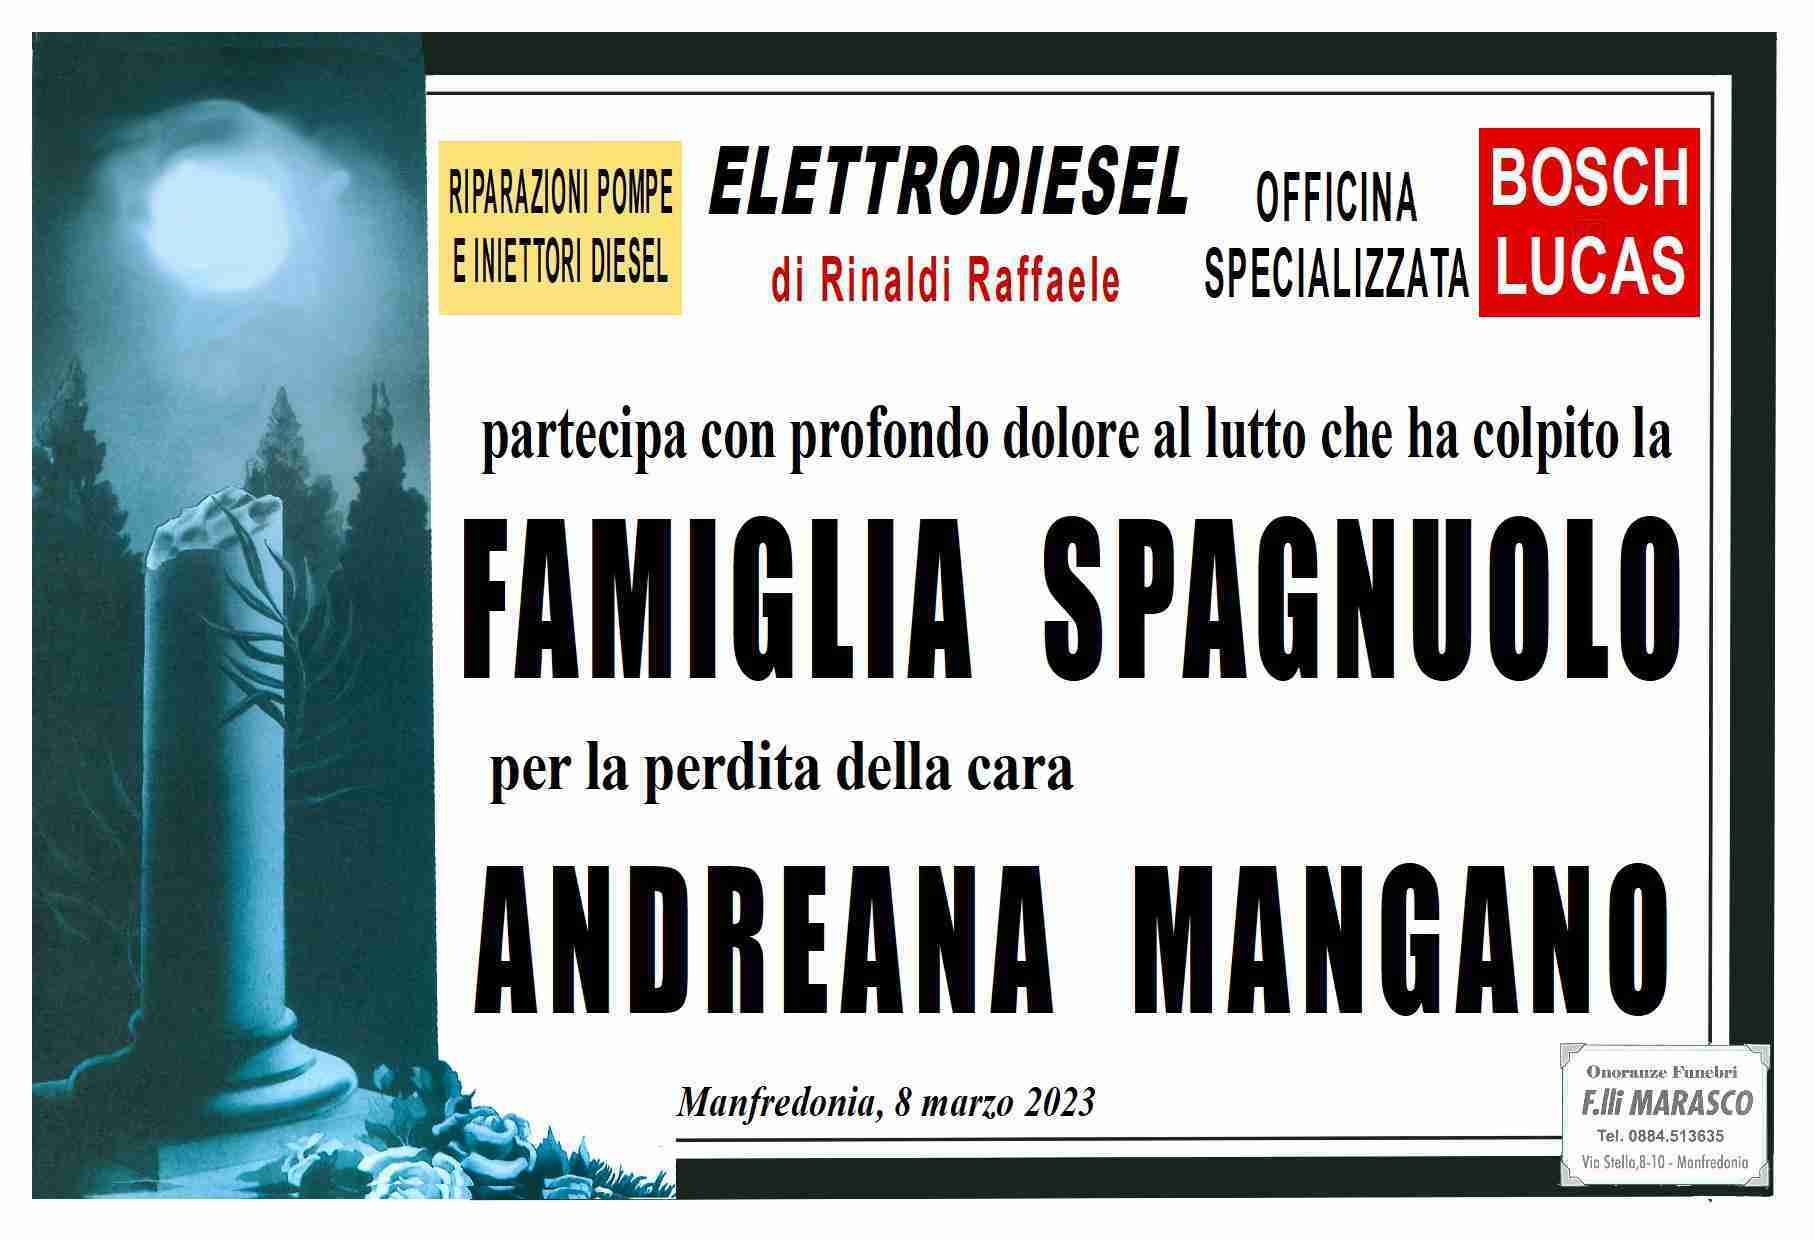 Andreana Mangano